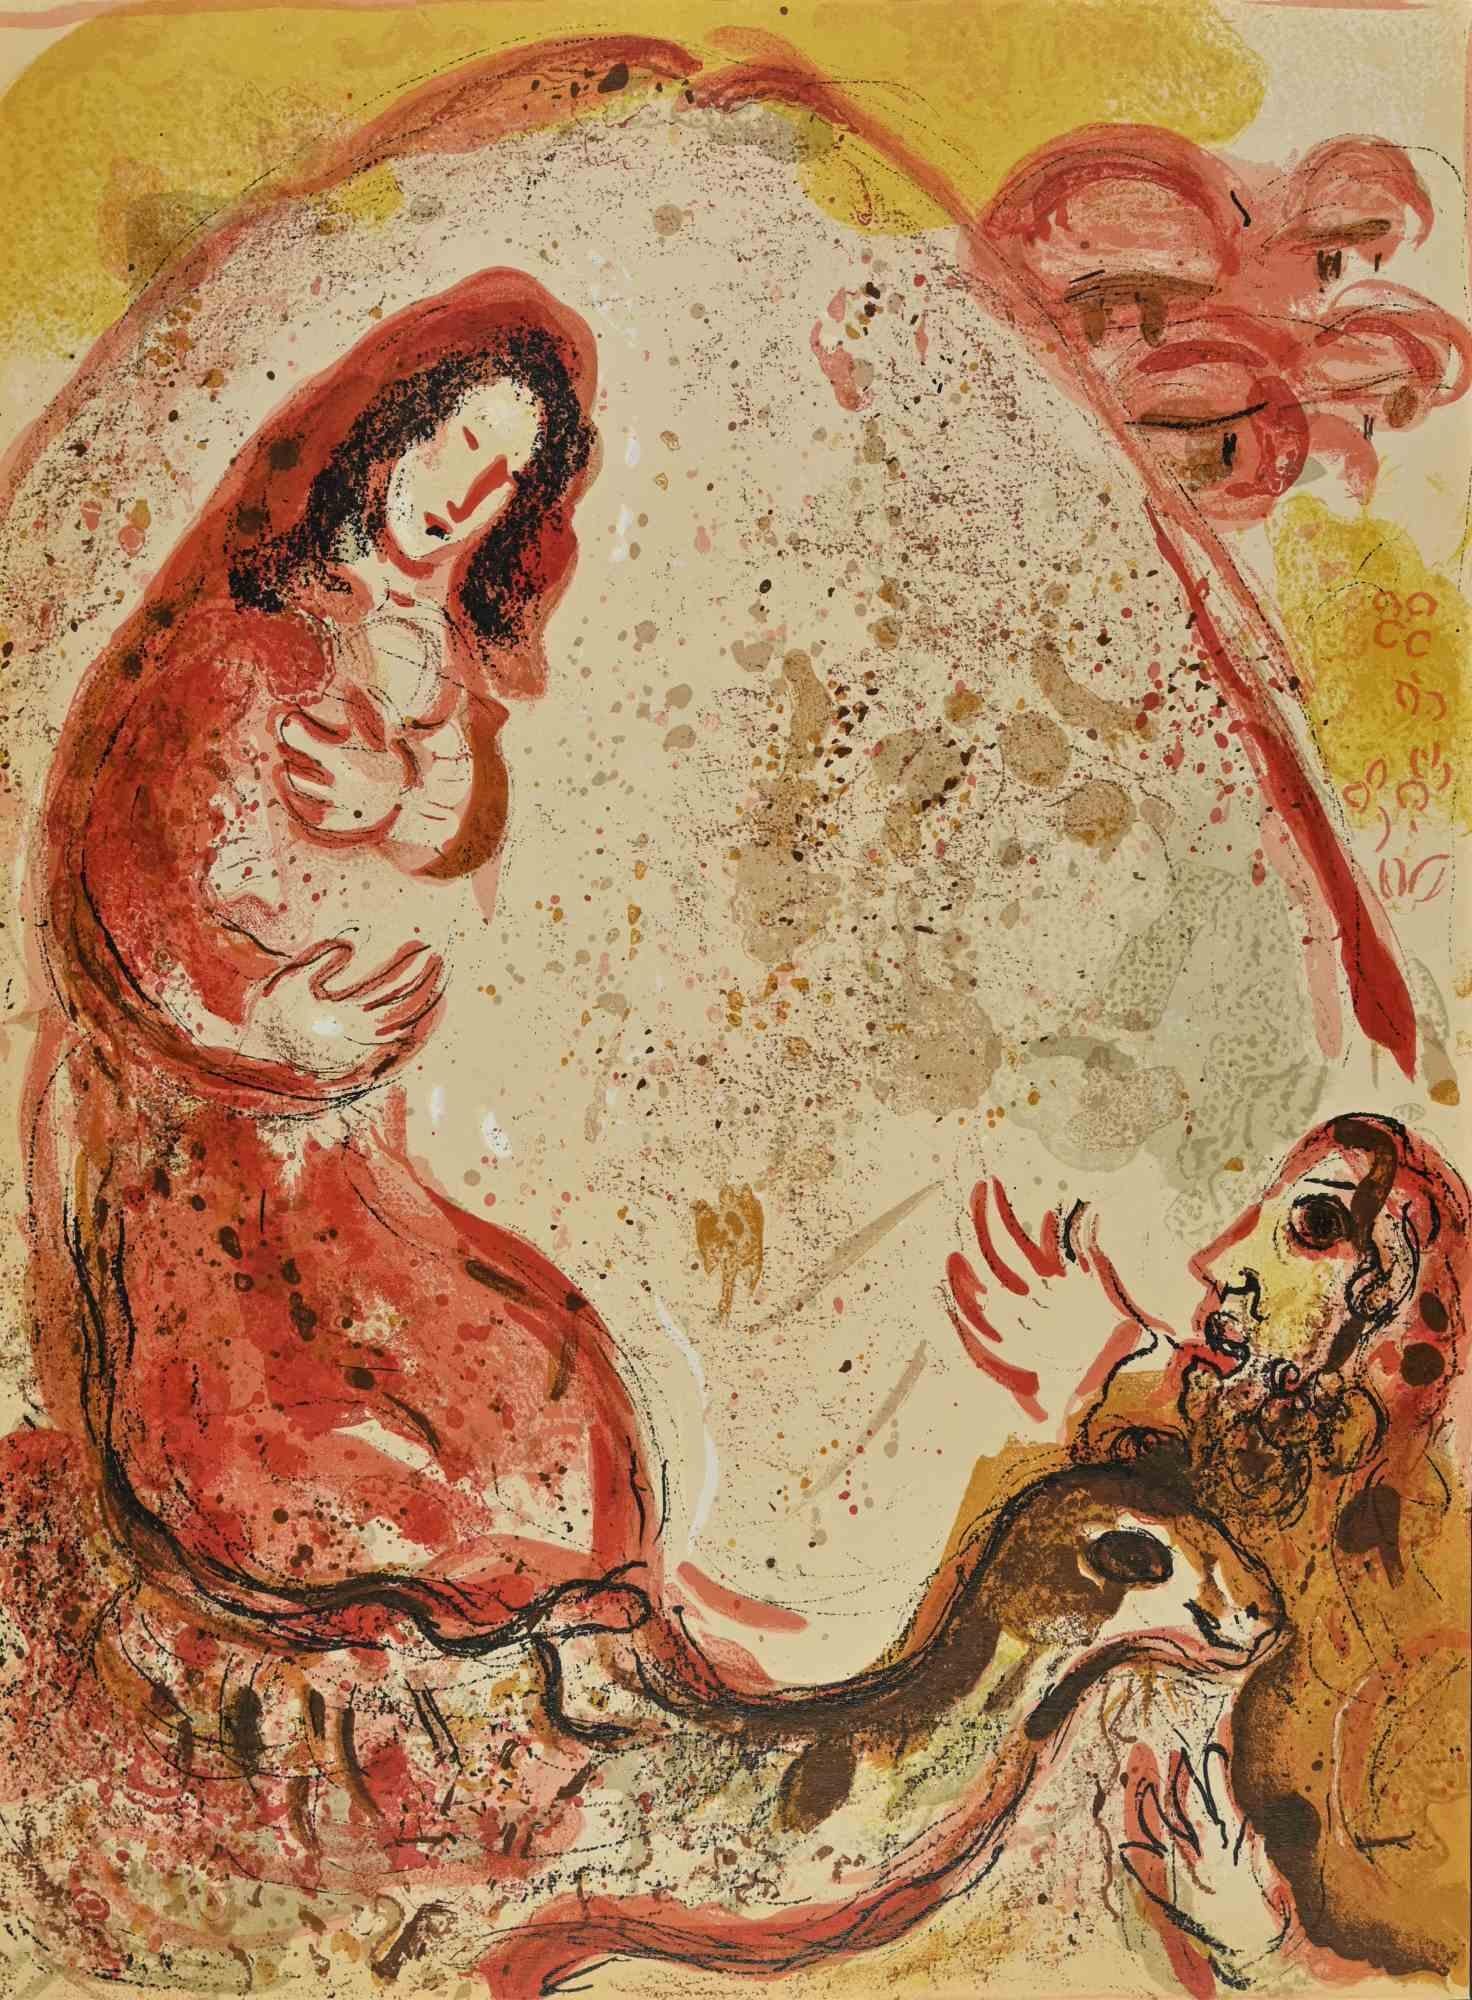 Rachel versteckt die Hausgötter ihres Vaters ist ein Kunstwerk aus der Serie "Die Bibel", die 1960 von Marc Chagall realisiert wurde.

Farblithografie auf braunem Papier, ohne Signatur.

Auflage von 6500 unsignierten Lithografien. Gedruckt von